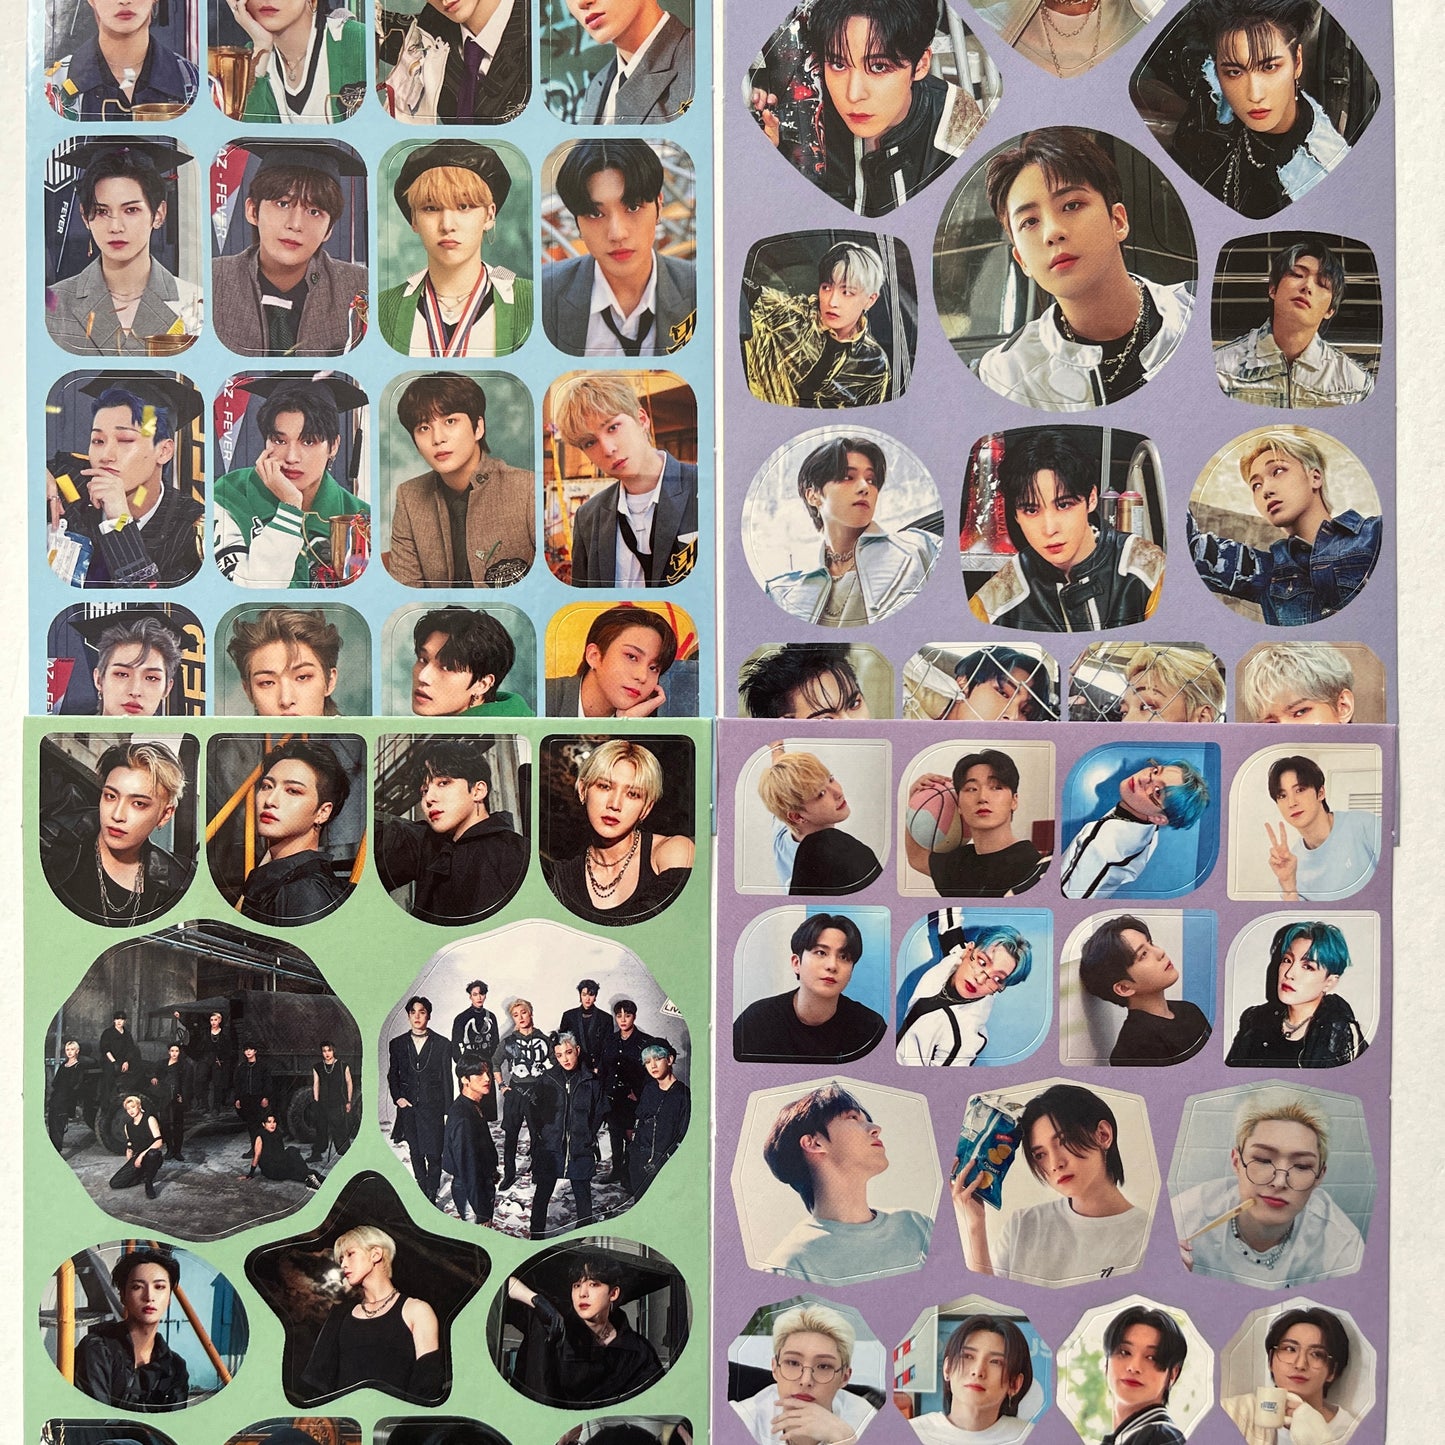 Tsuvishop k-pop Ateez Sticker Sheet Glossy Finish